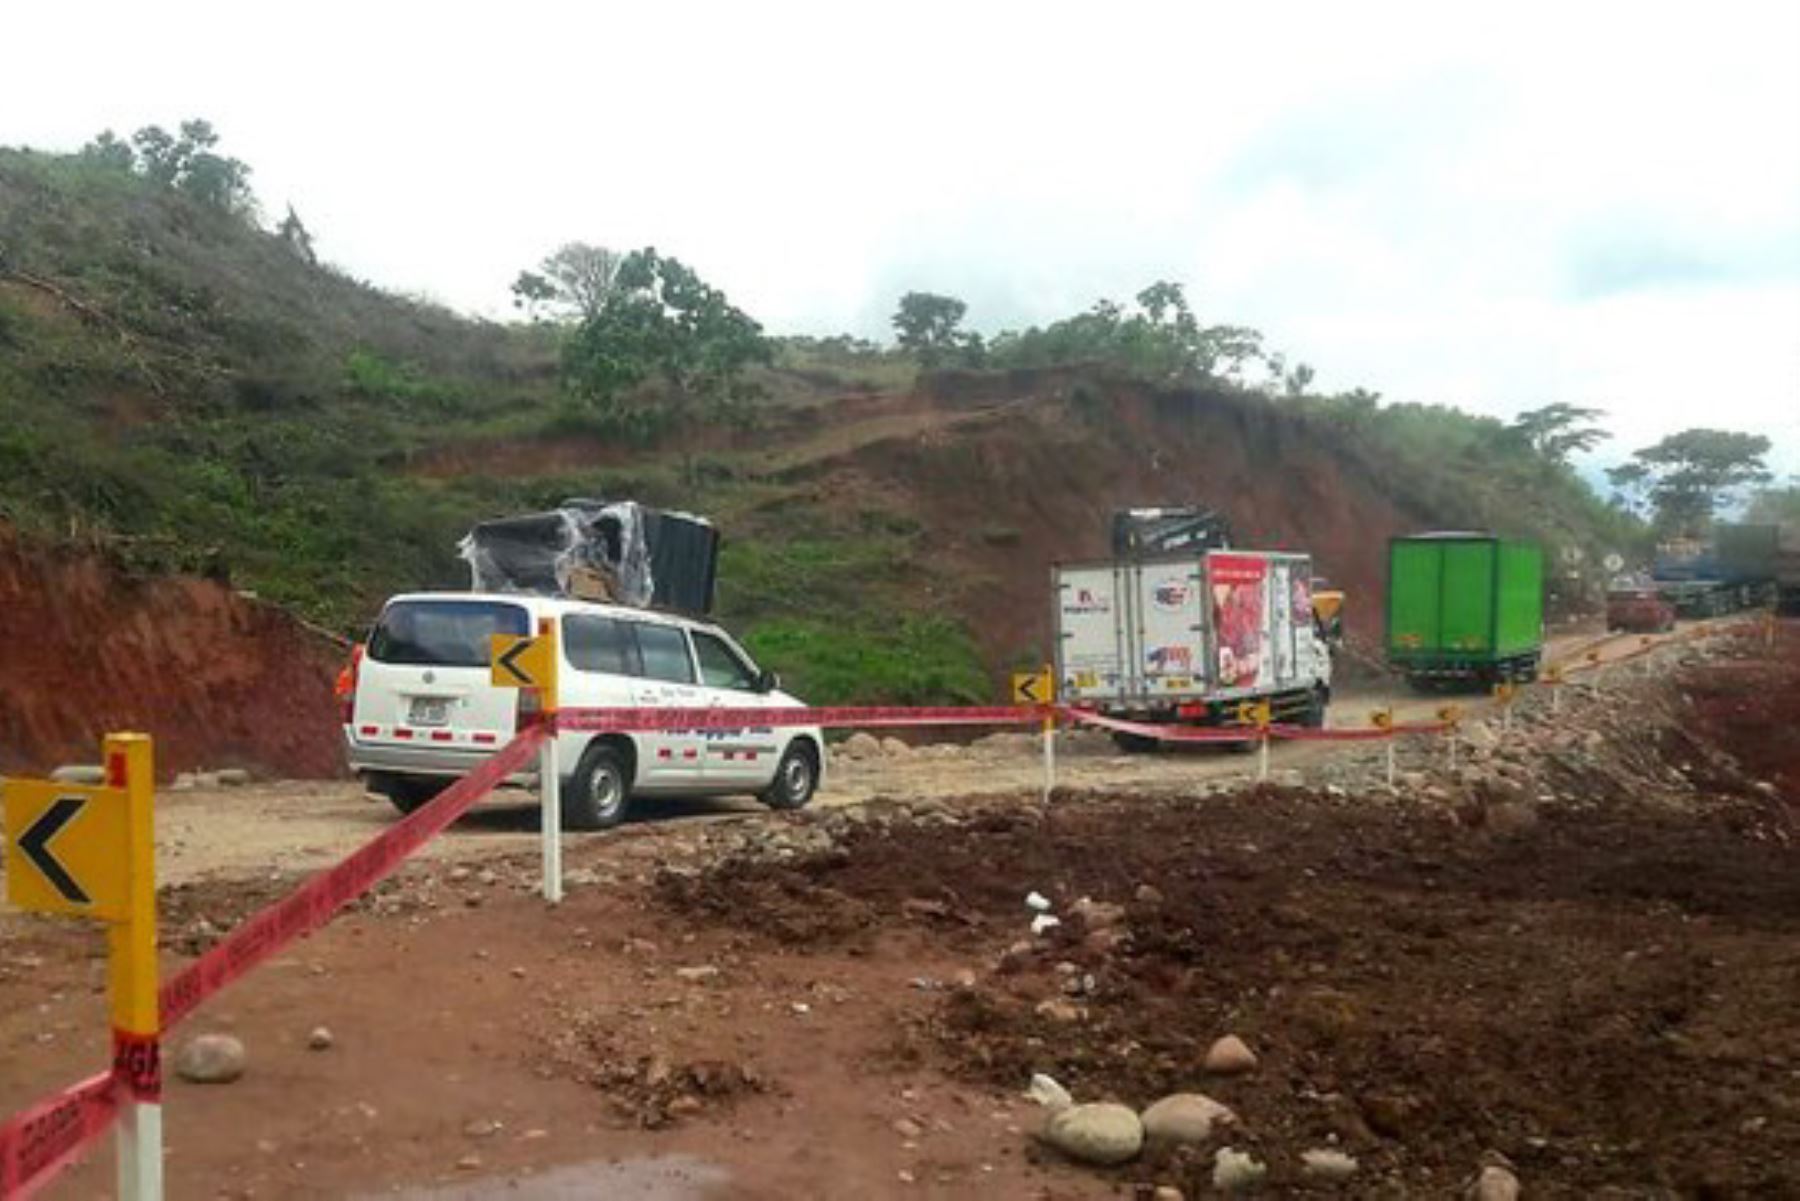 El Ministerio de Transportes y Comunicaciones (MTC) intensifica los trabajos en atención a la emergencia vial suscitada en kilómetro 455 de la carretera Federico Basadre.